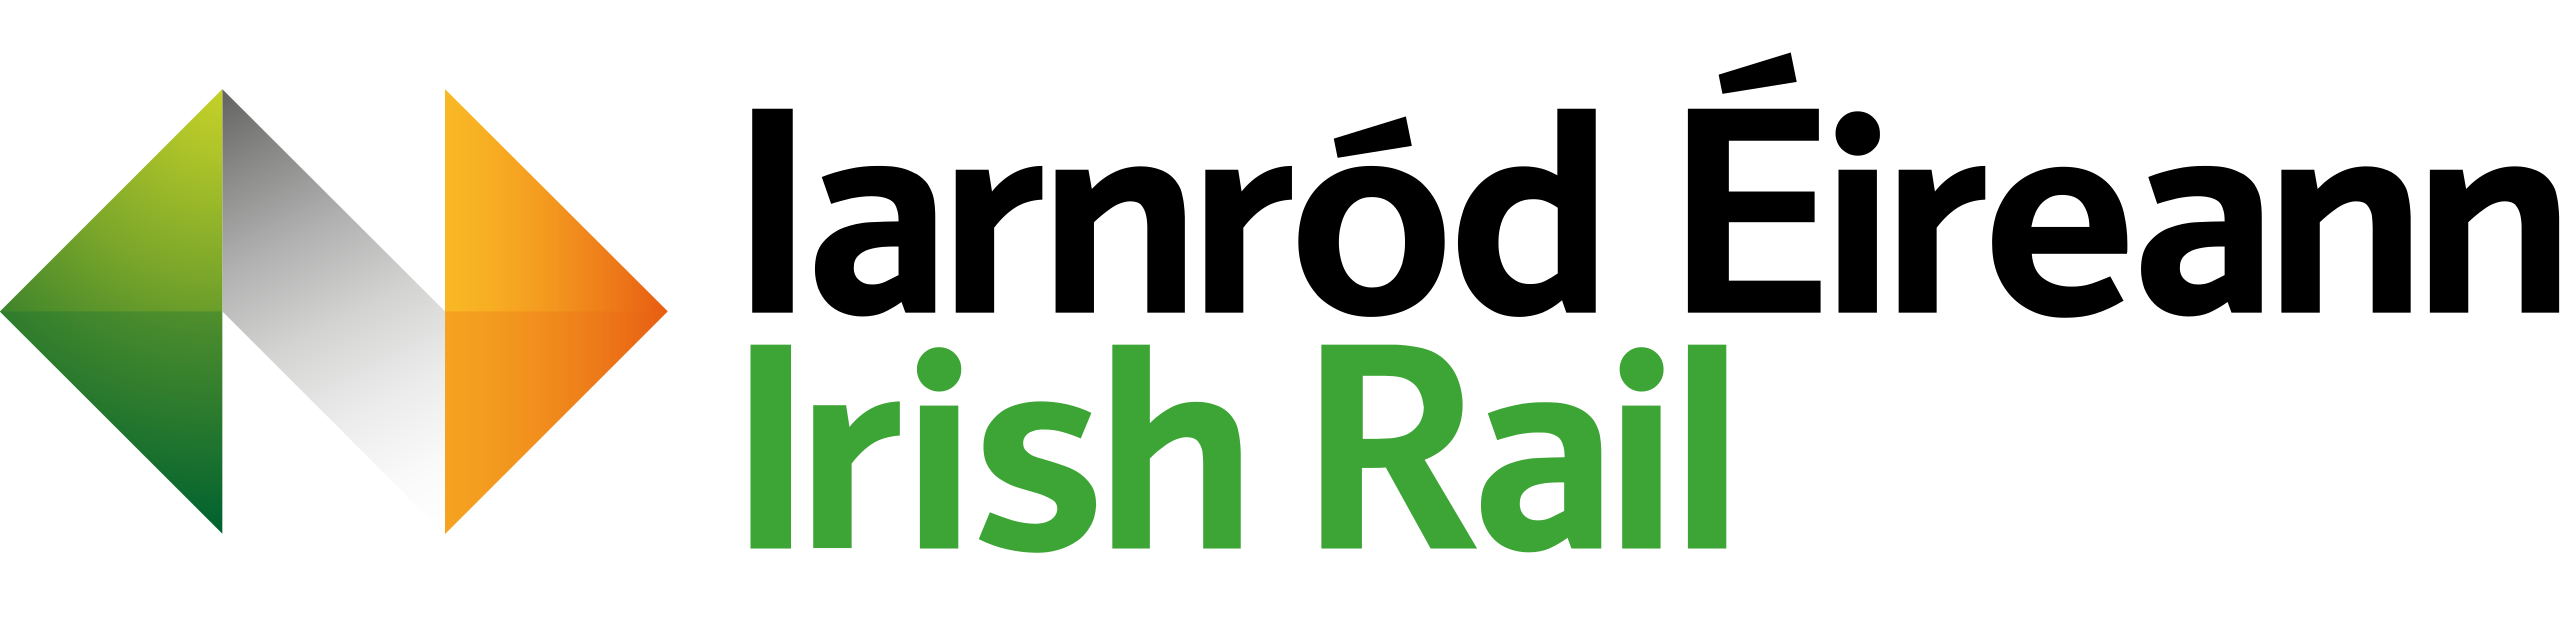 Irish_Rail_Logo